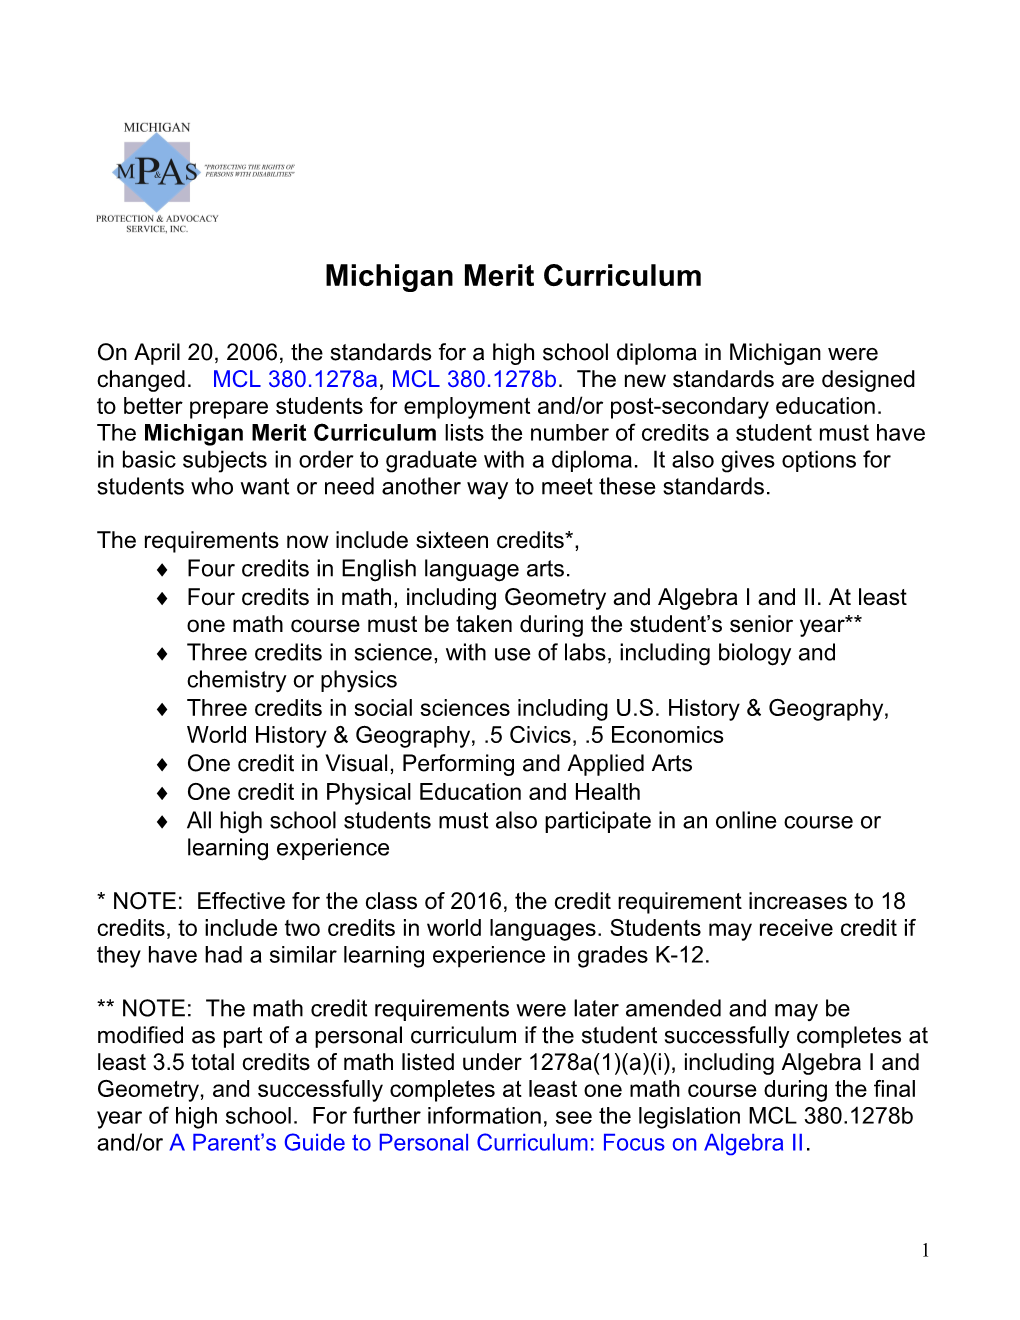 Michigan Merit Curriculum